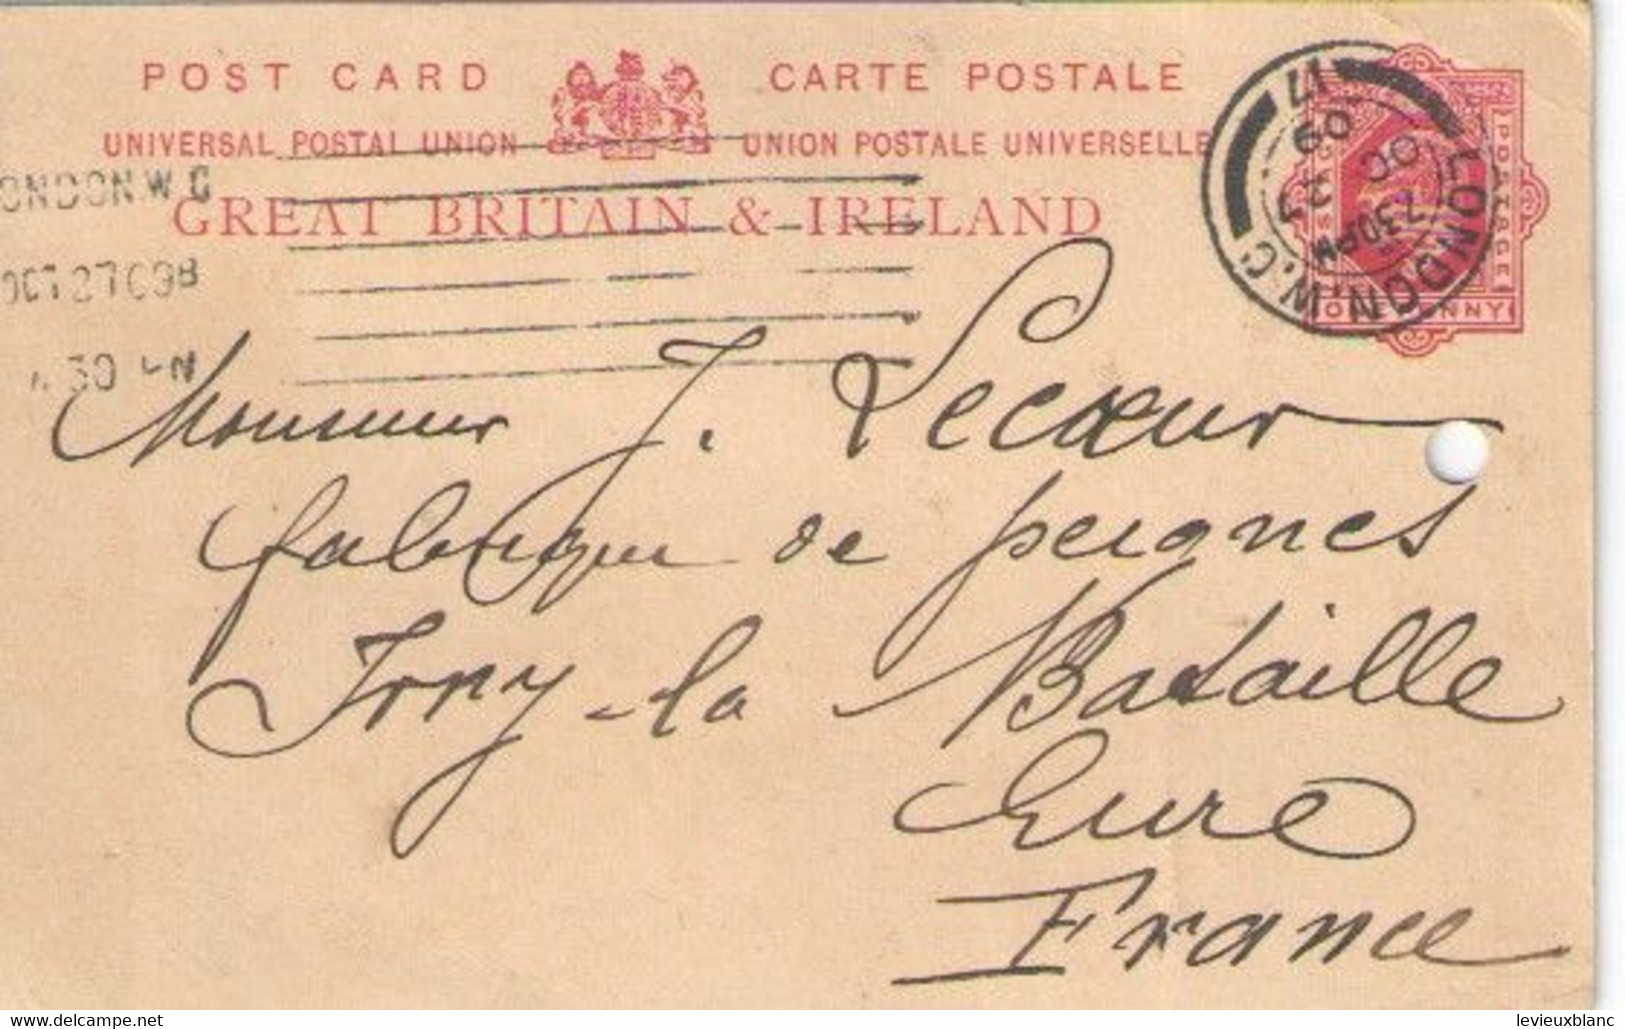 GREAT BRITAIN & IRELAND/Vente D'Ivoire/LONDON/Joseph LECOEUR/Fabricant Peignes Ivoire/Ivry La Bataille/Eure/1909 FACT551 - Royaume-Uni